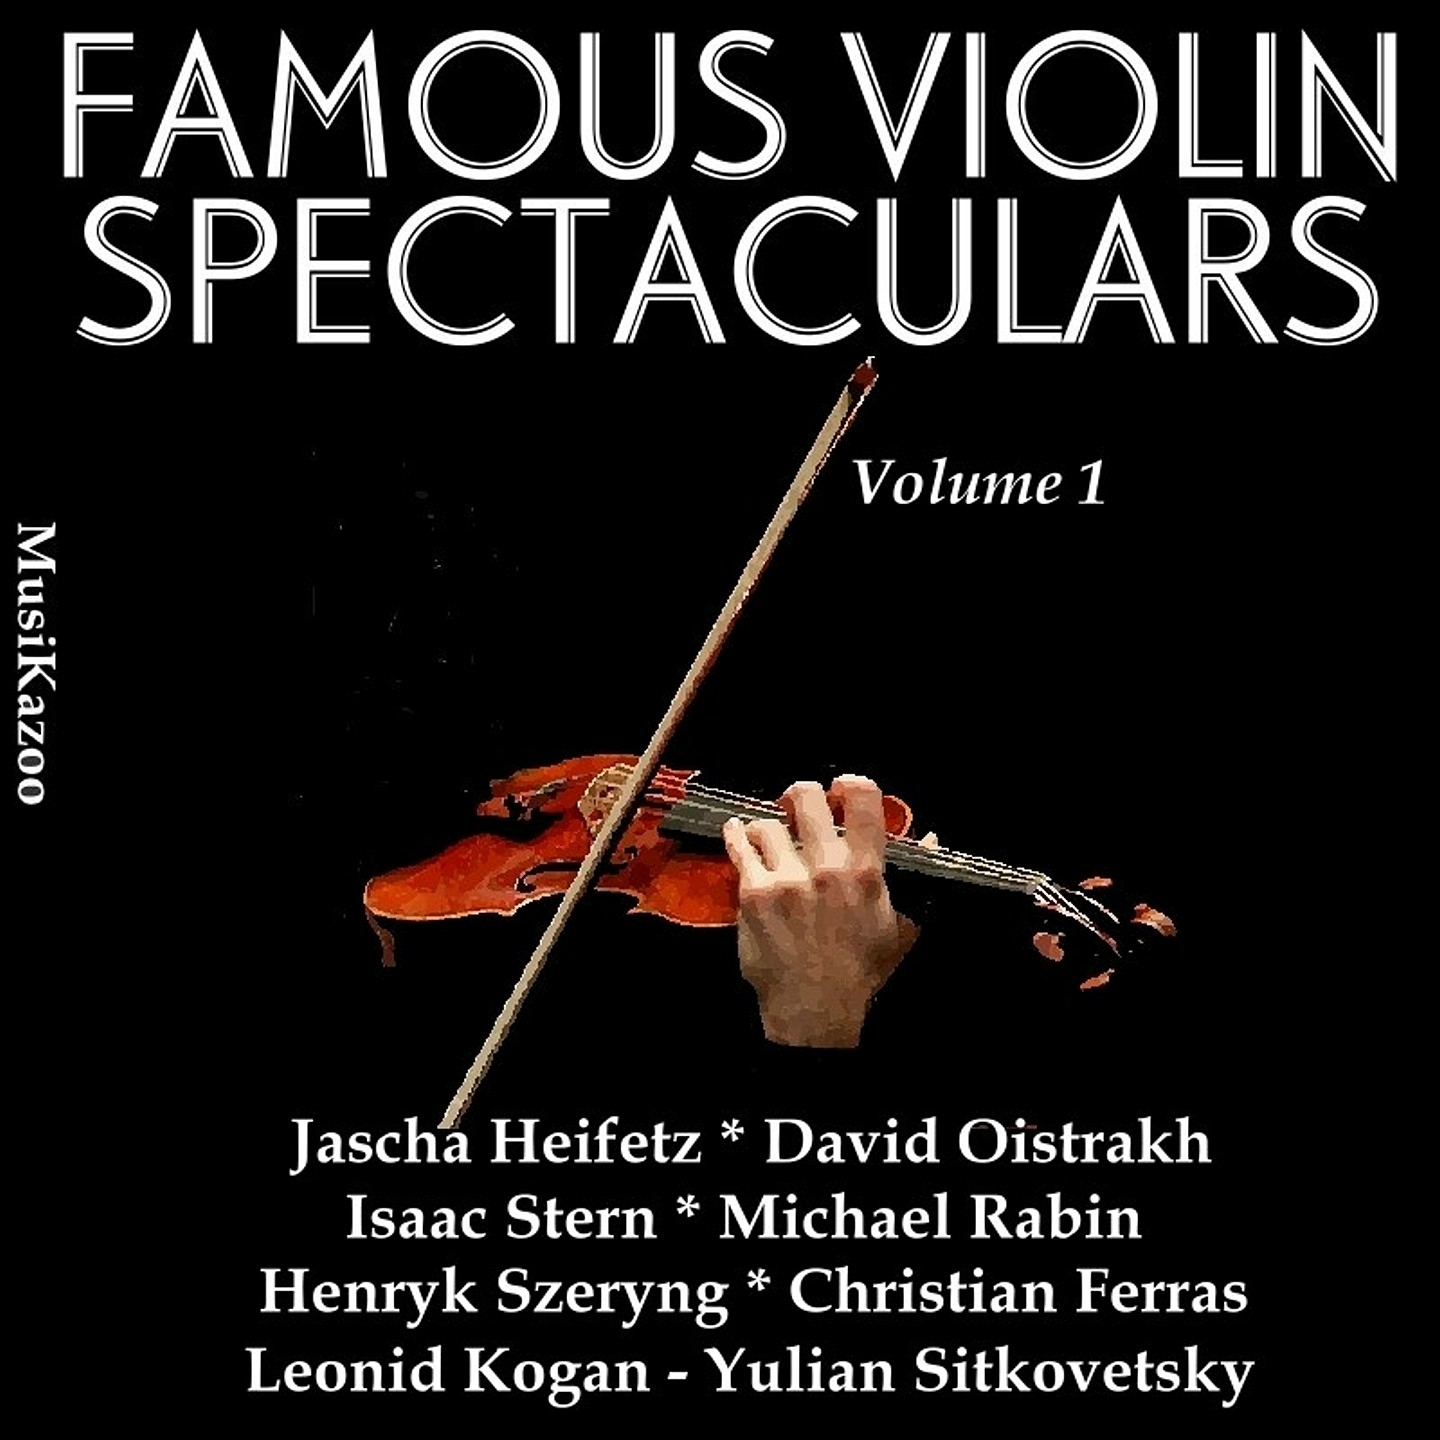 Concerto No. 2 for Violin and Orchestra in E Minor